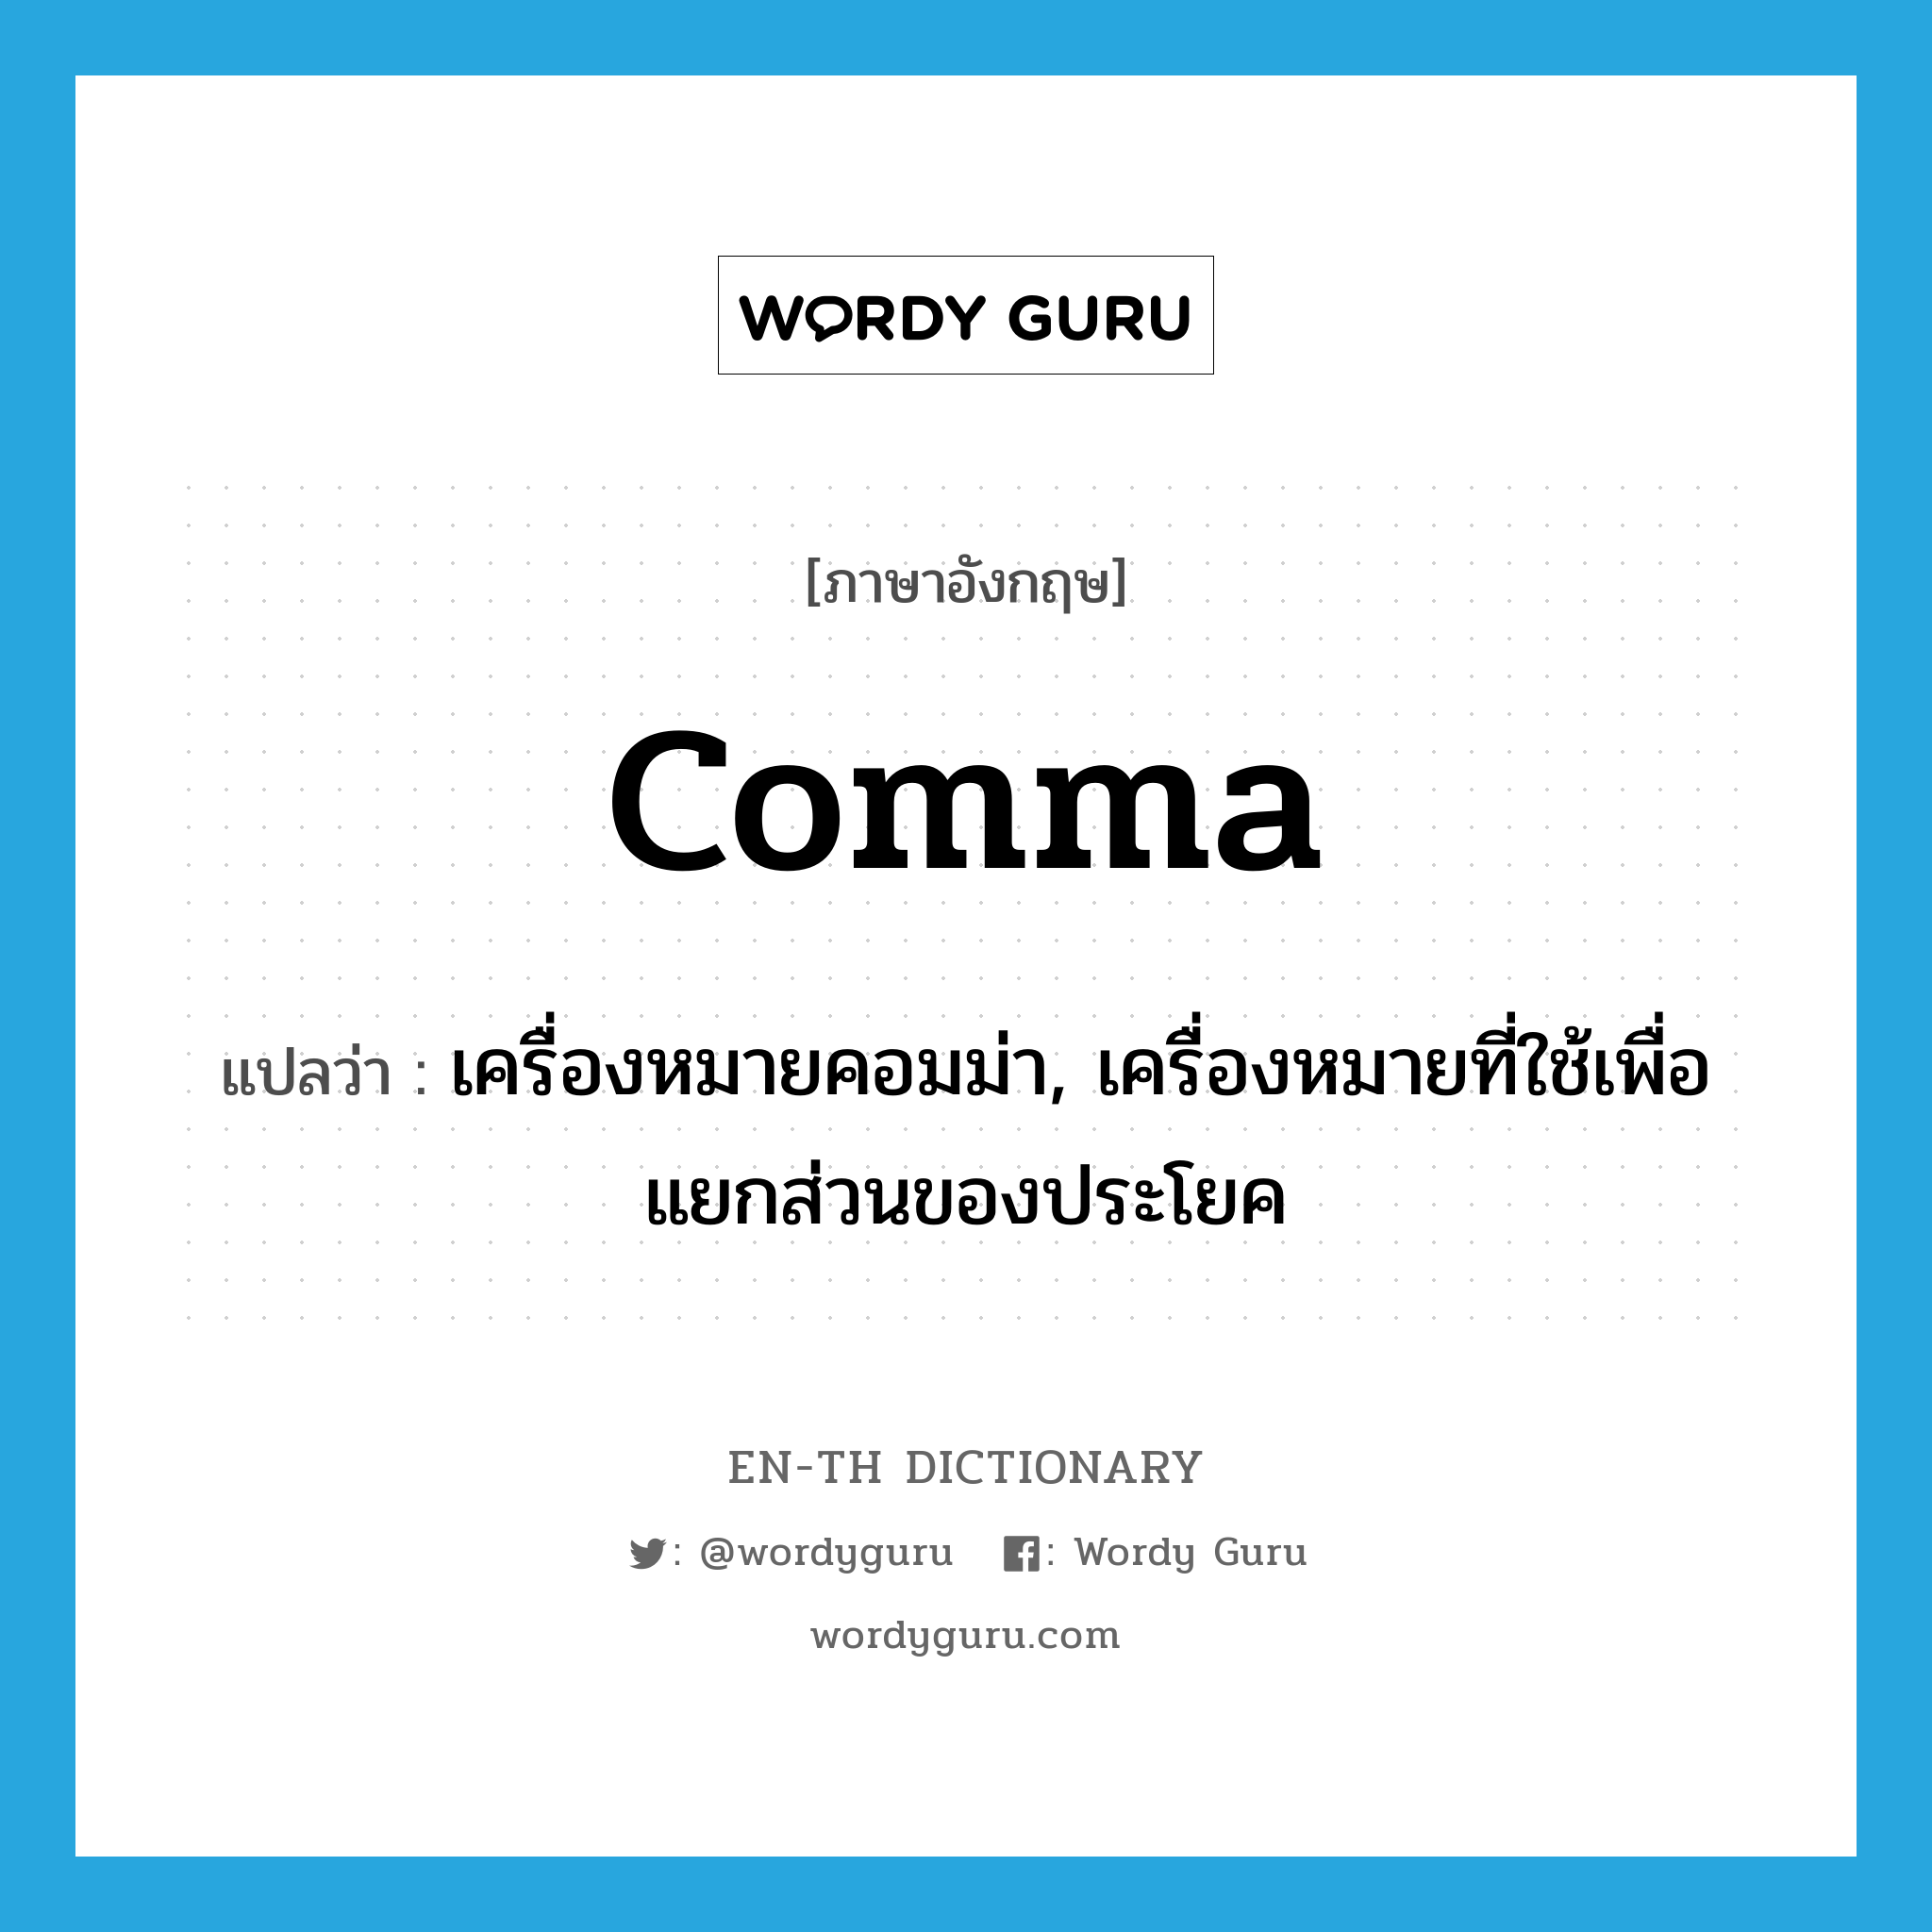 เครื่องหมายคอมม่า, เครื่องหมายที่ใช้เพื่อแยกส่วนของประโยค ภาษาอังกฤษ?, คำศัพท์ภาษาอังกฤษ เครื่องหมายคอมม่า, เครื่องหมายที่ใช้เพื่อแยกส่วนของประโยค แปลว่า comma ประเภท N หมวด N